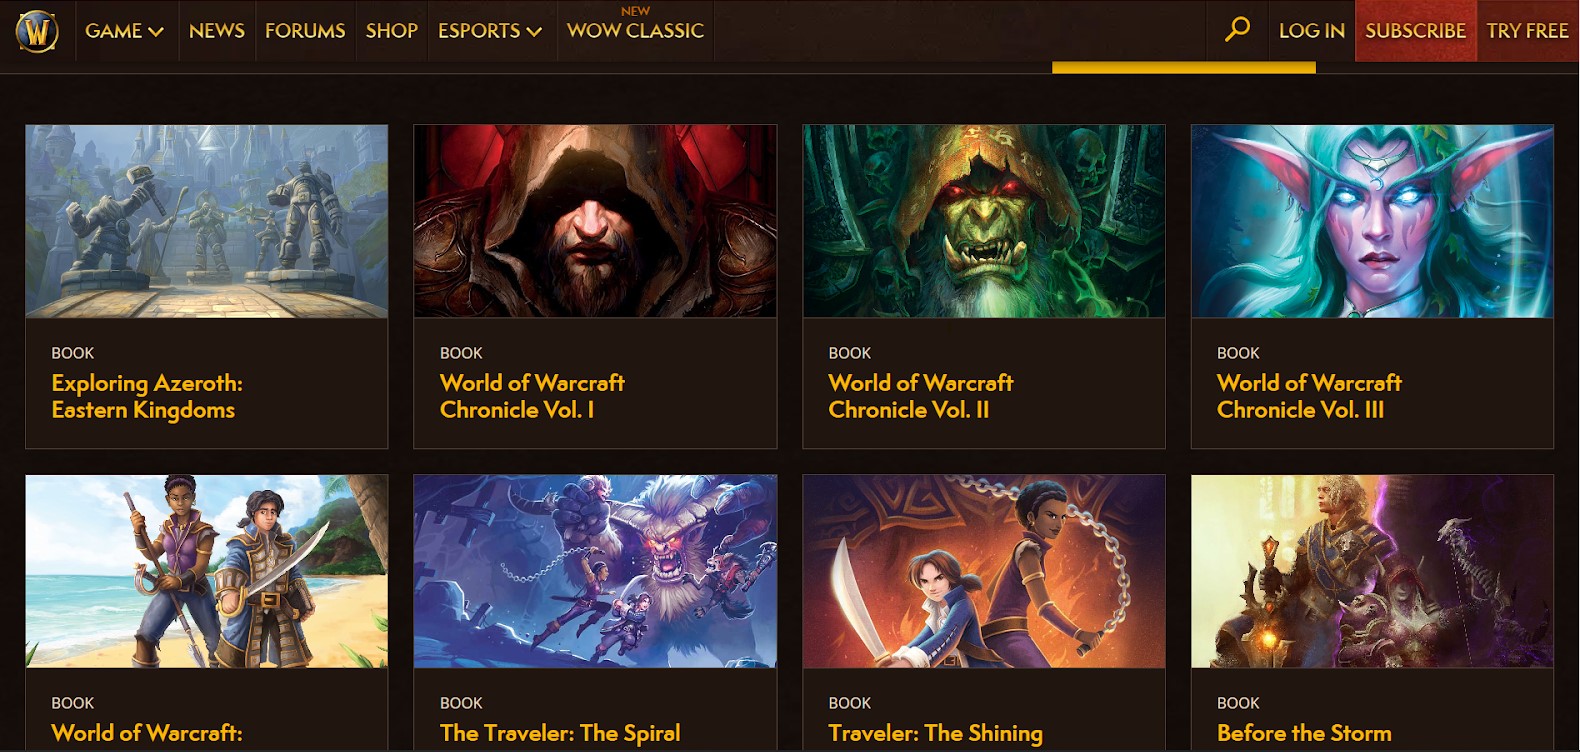 World of Warcraft books